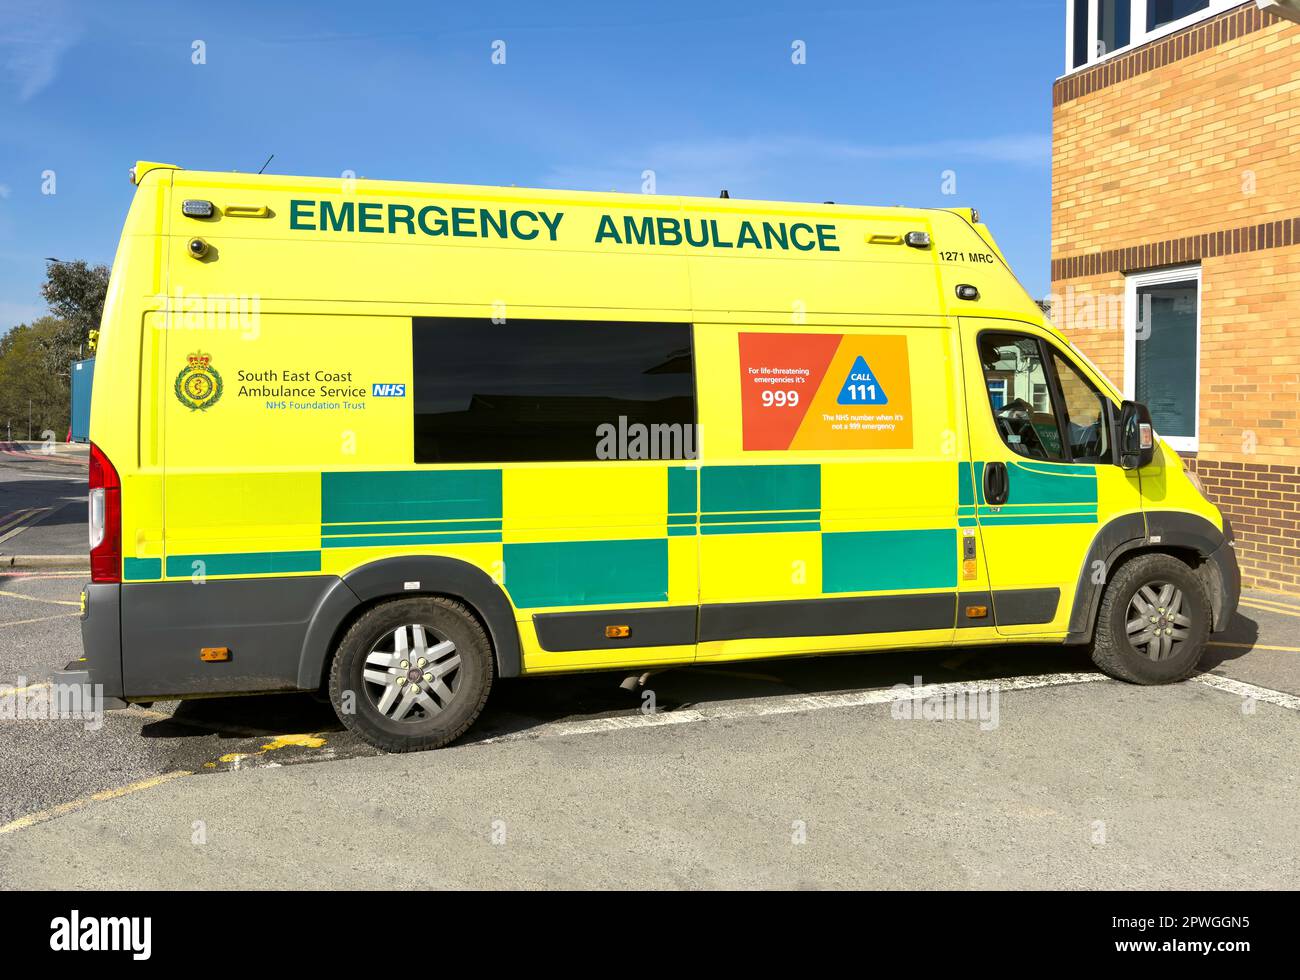 Ambulance de la côte sud-est au service des urgences, hôpital St Peter's NHS, Guildford Road, Lyne, Surrey, Angleterre, Royaume-Uni Banque D'Images